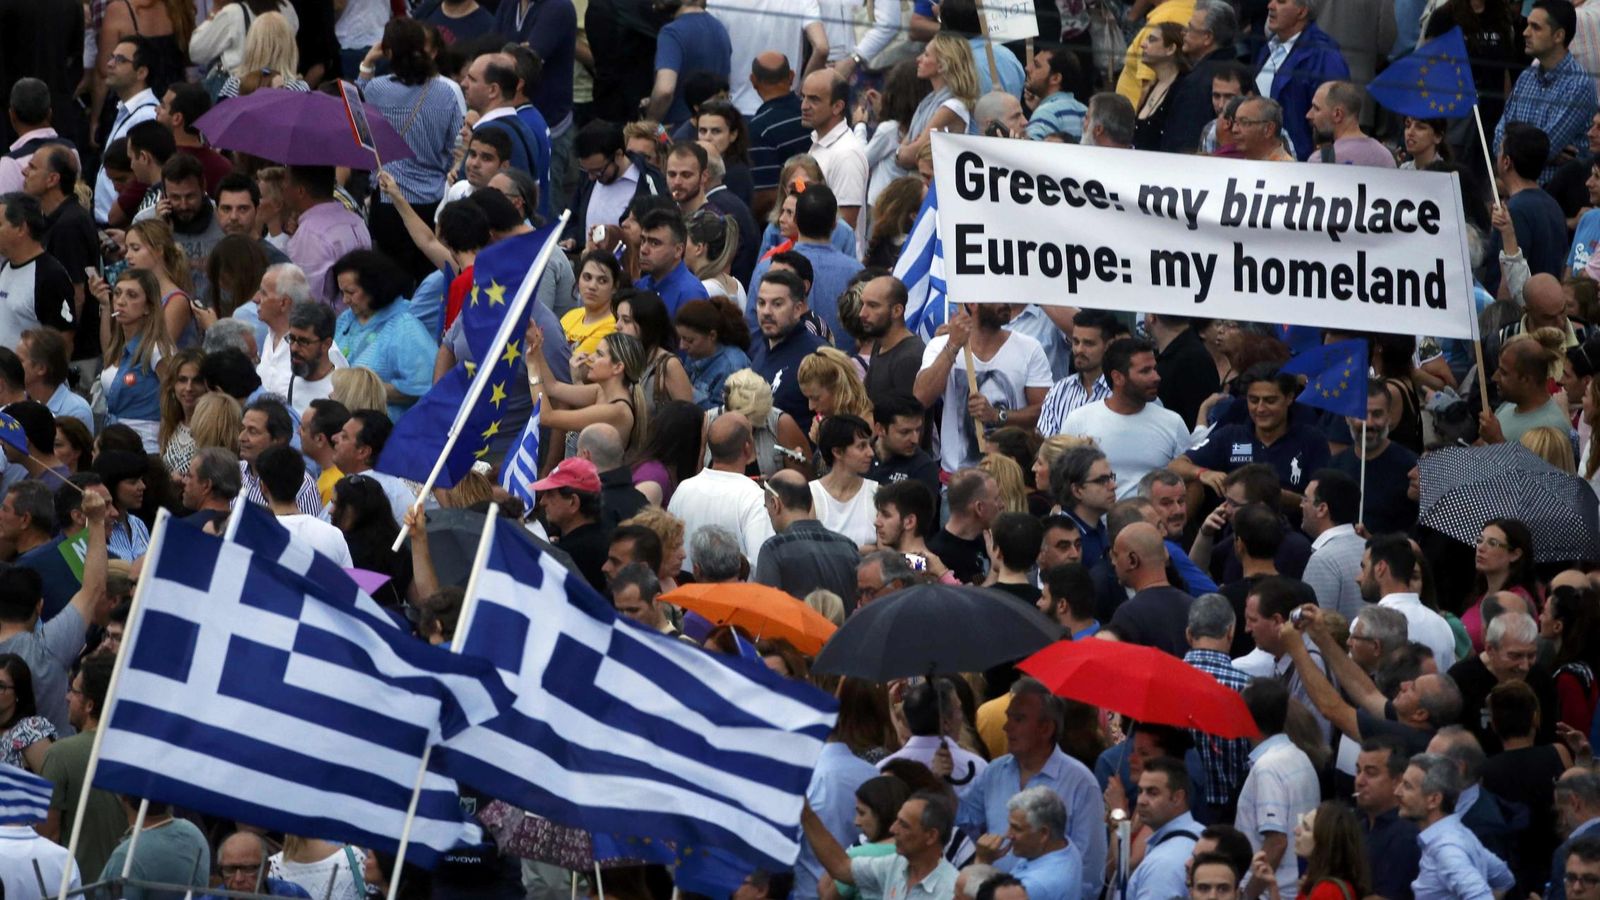 Foto: Manifestación en la emblemática plaza Syntagma de Atenas, en Grecia. (Reuters)